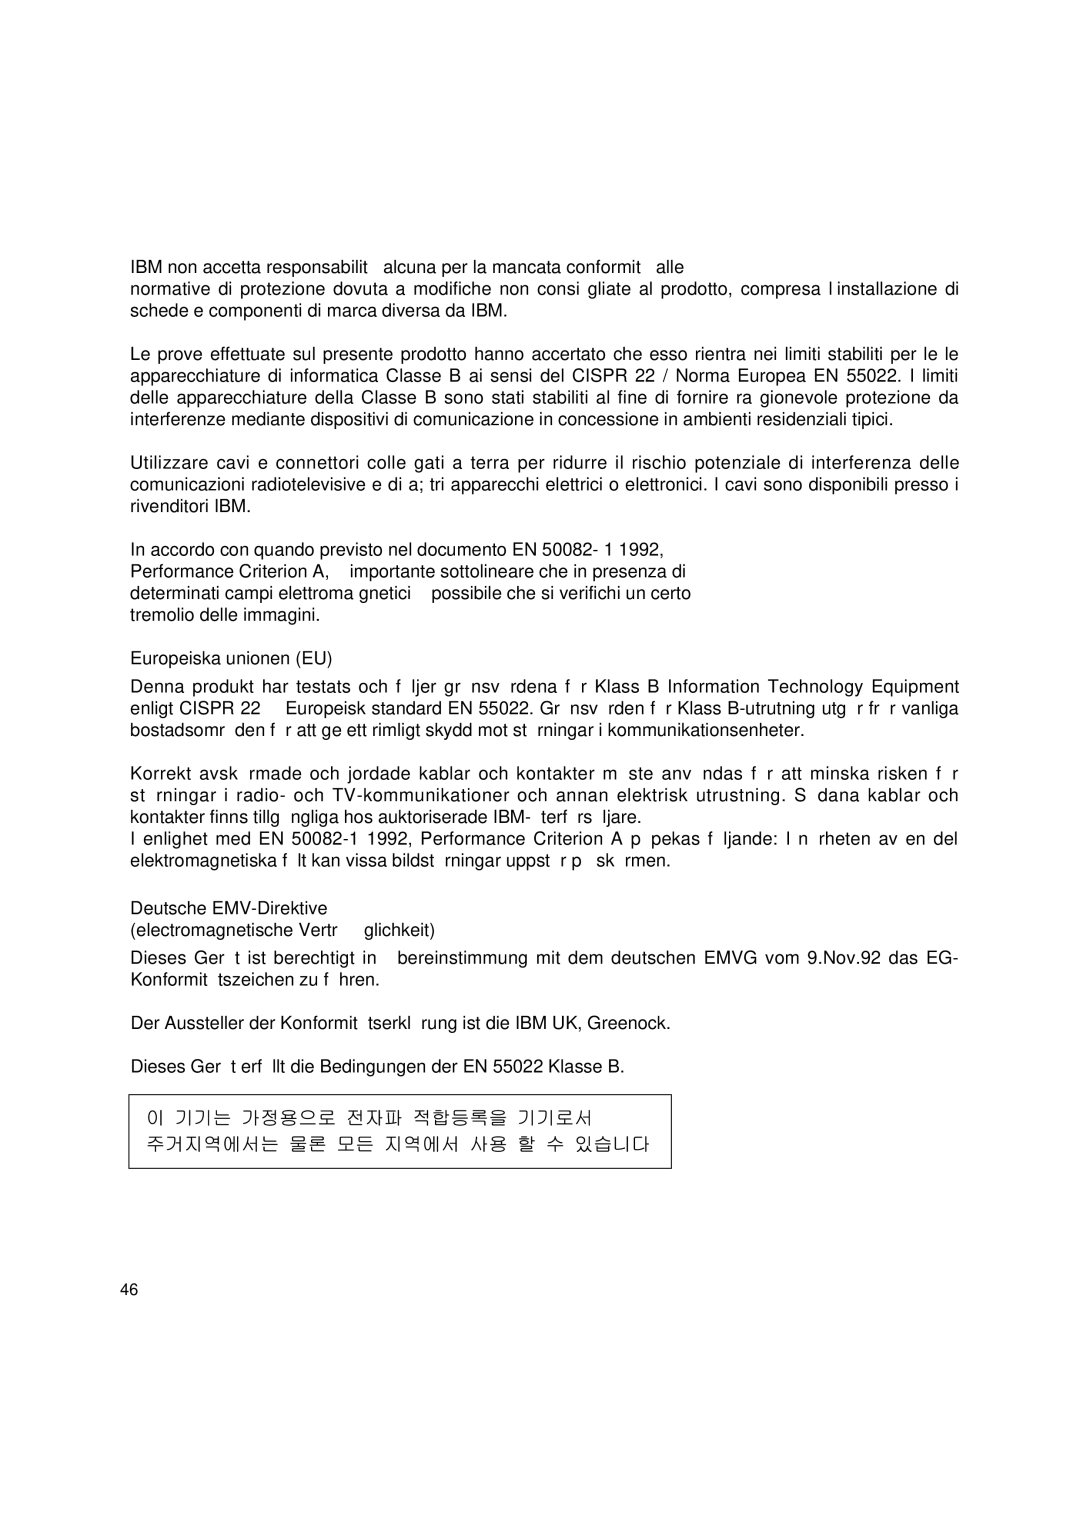 Lenovo T545 manual Europeiska unionen EU, Deutsche EMV-Direktive electromagnetische Verträ glichkeit 